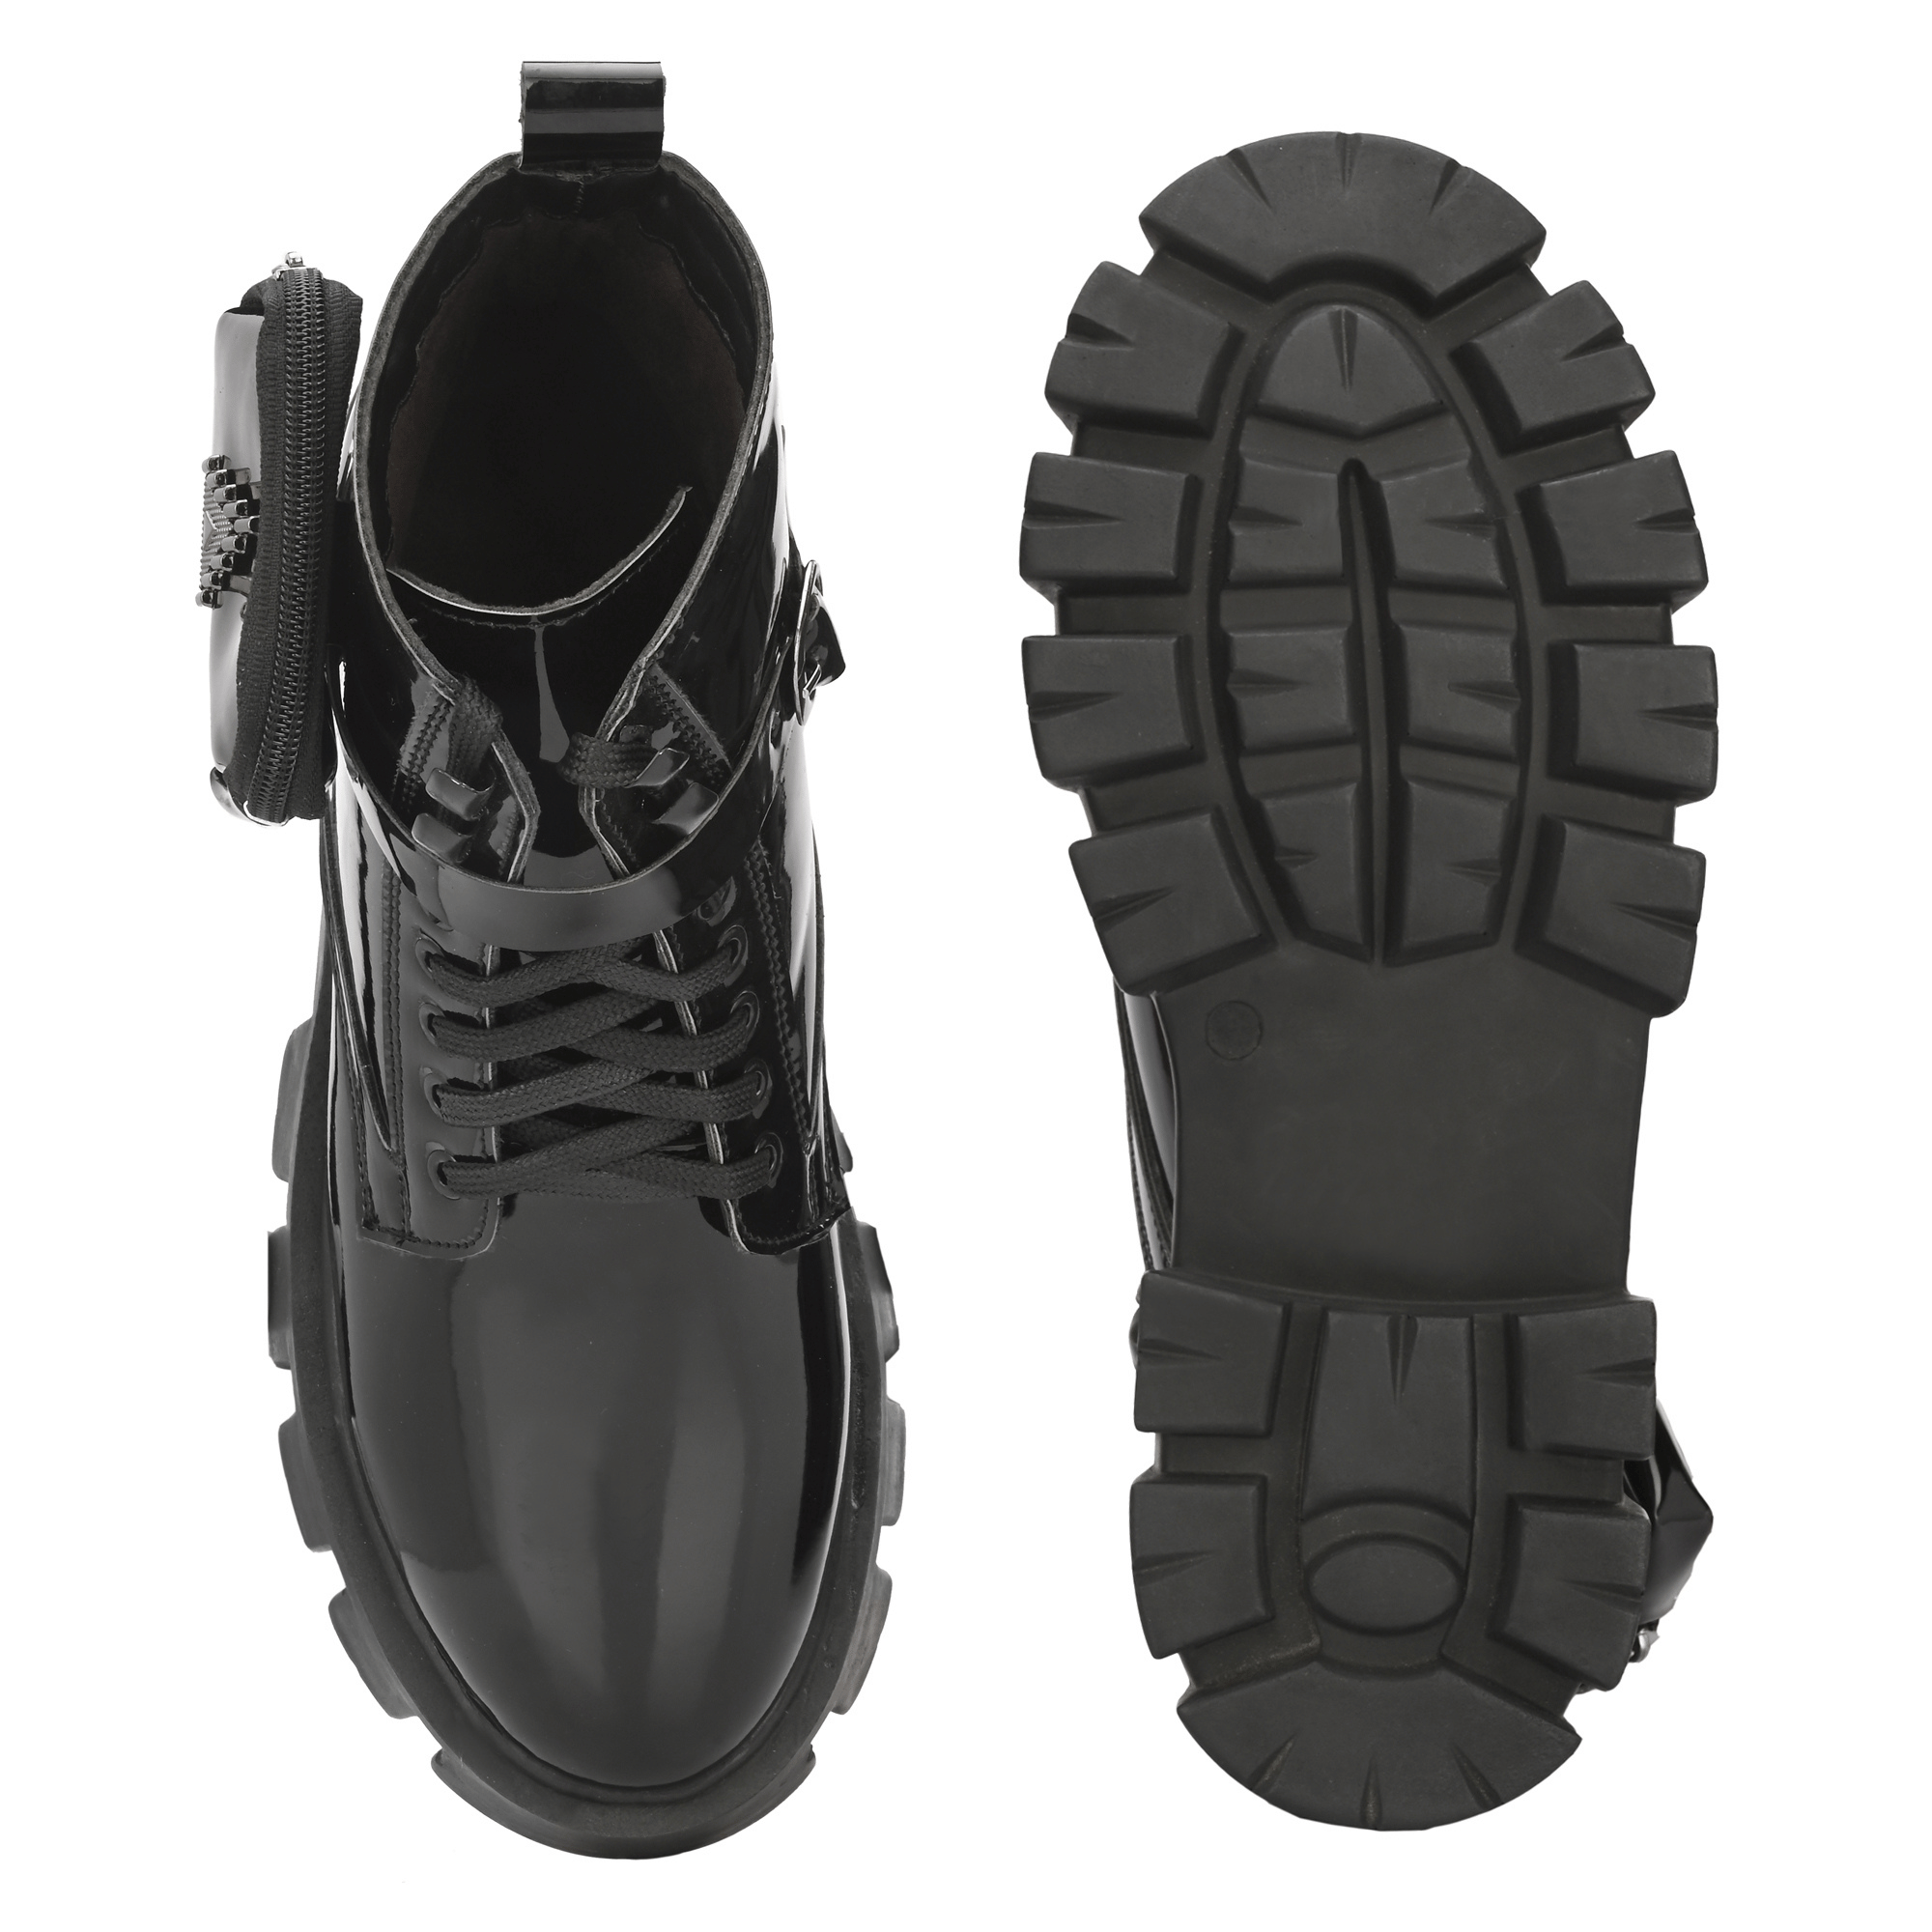 Lug Sole Lace Up Combat Boots - Black